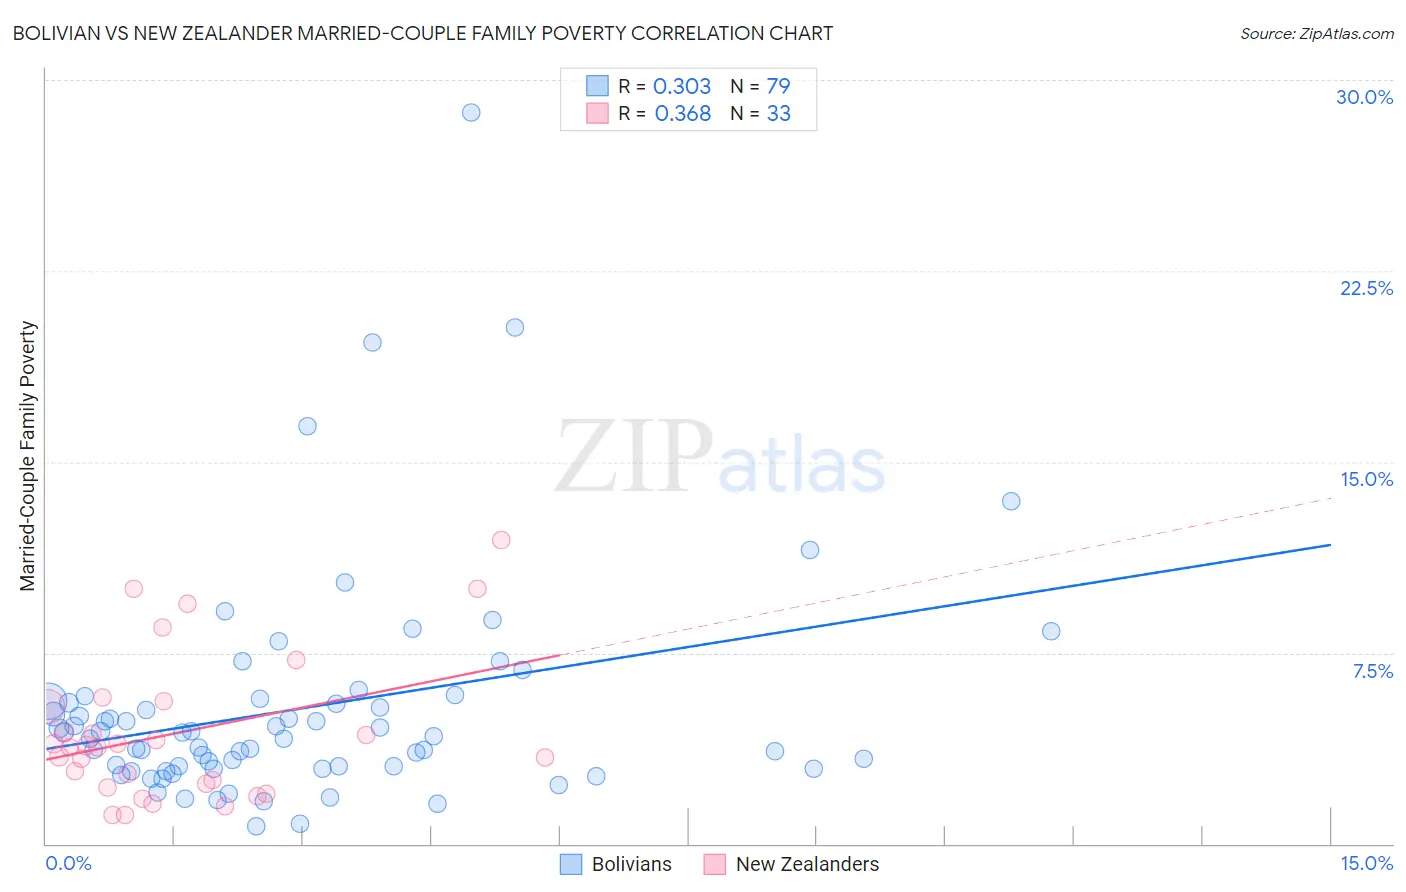 Bolivian vs New Zealander Married-Couple Family Poverty